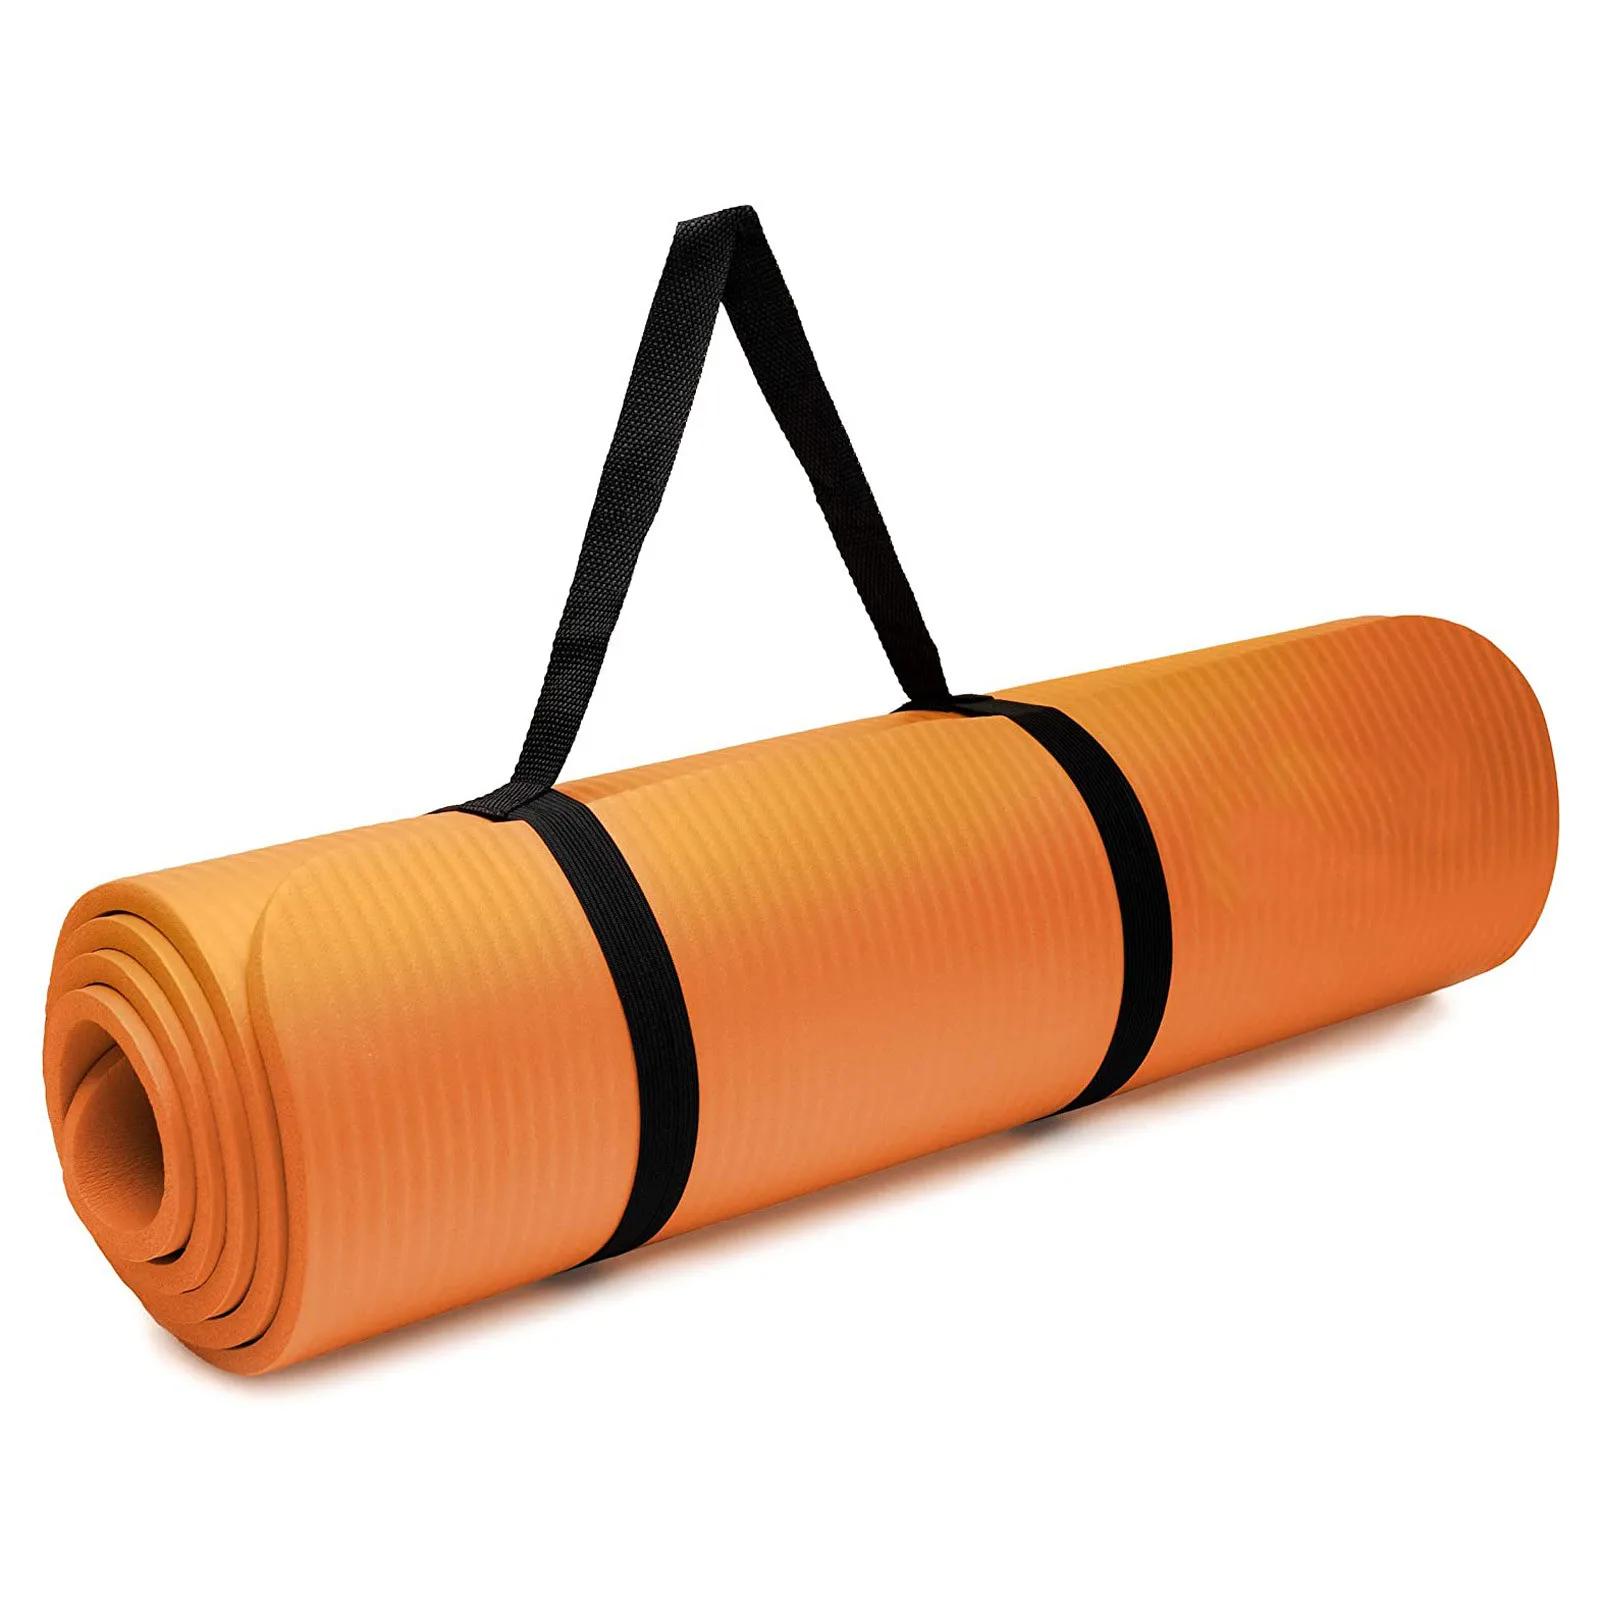 Tapete de Yoga Anti-derrapante Esportes Fitness Esteira Grossa de EVA Espuma de Conforto yoga mat para o Exercício, Ioga, Ginástica e Pilates mat